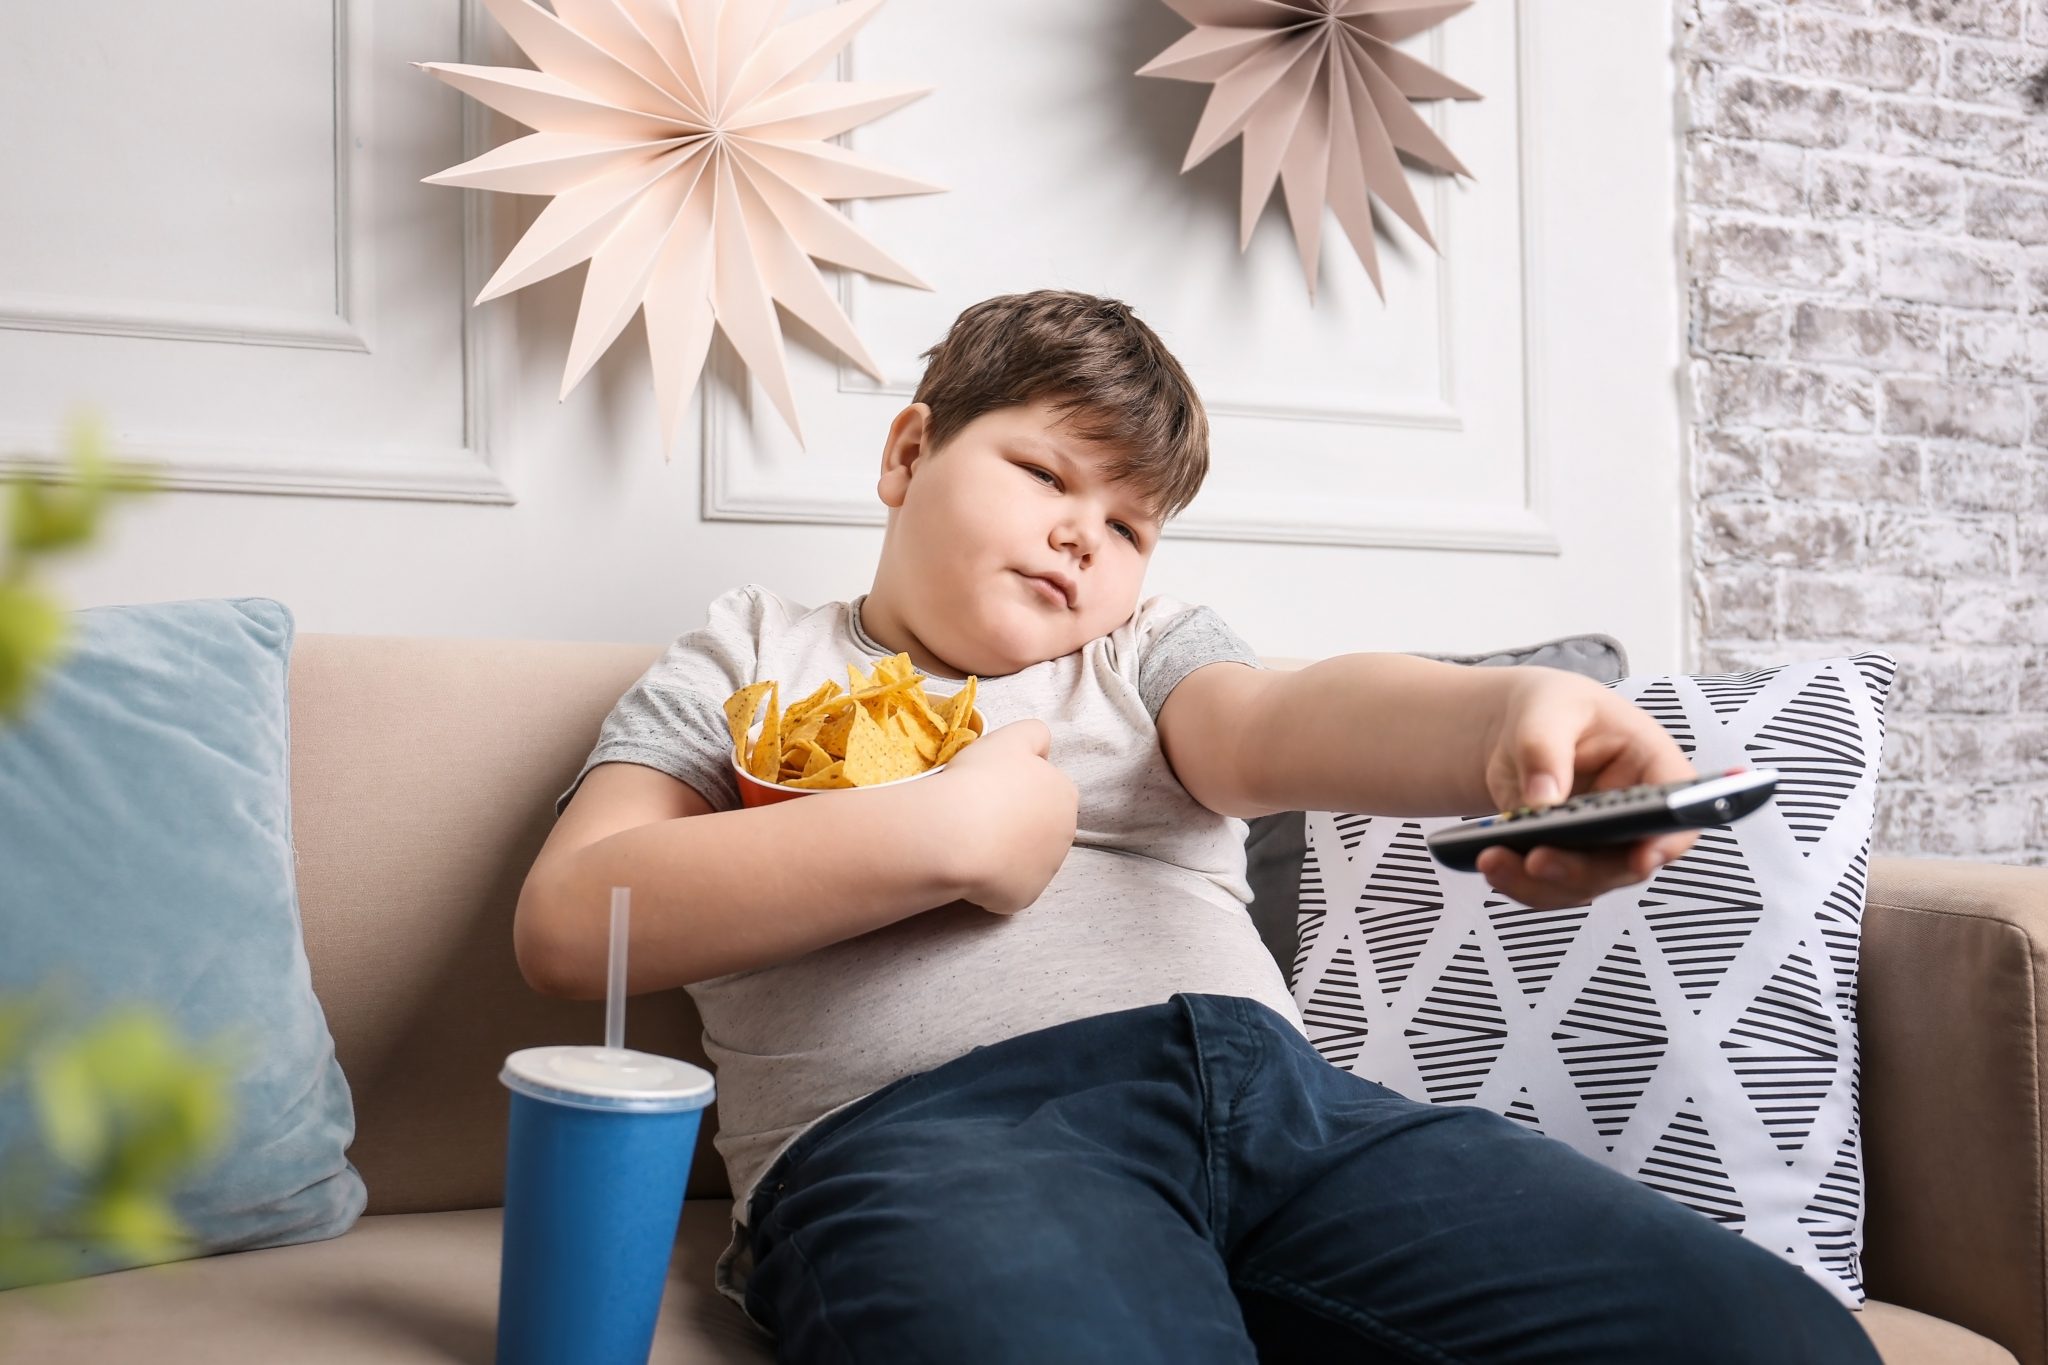 การกินอาหาร Fast Food หรืออาหารที่หวานจัด ส่งผลให้เด็กไทยเป็นโรคอ้วน